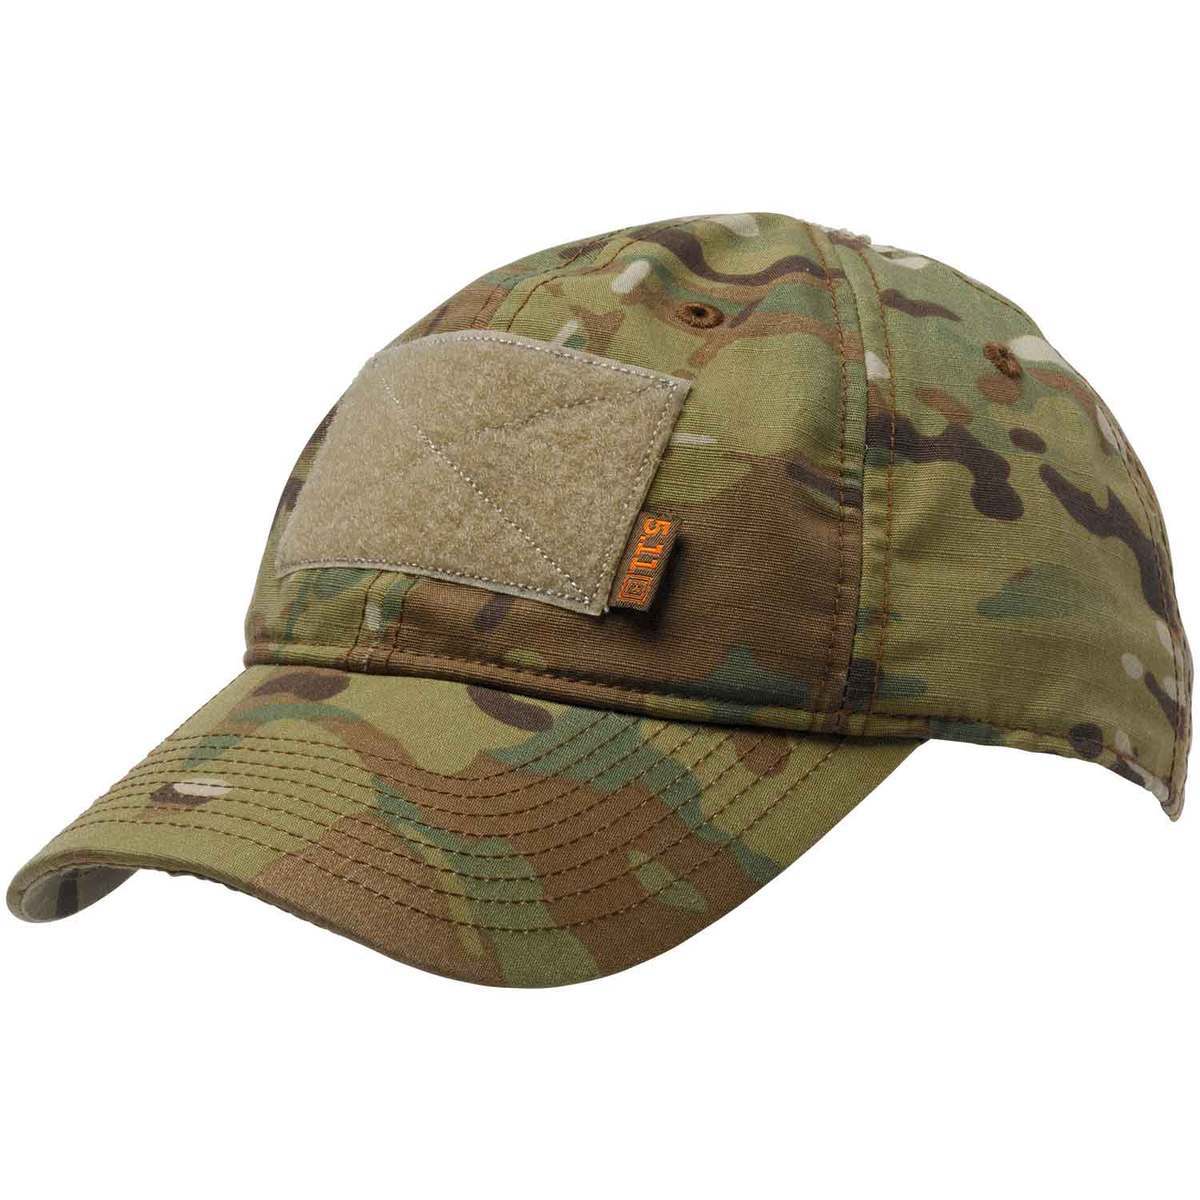 5.11 Men's Flag Bearer Tactical Hat - MultiCam - MultiCam One Size Fits ...